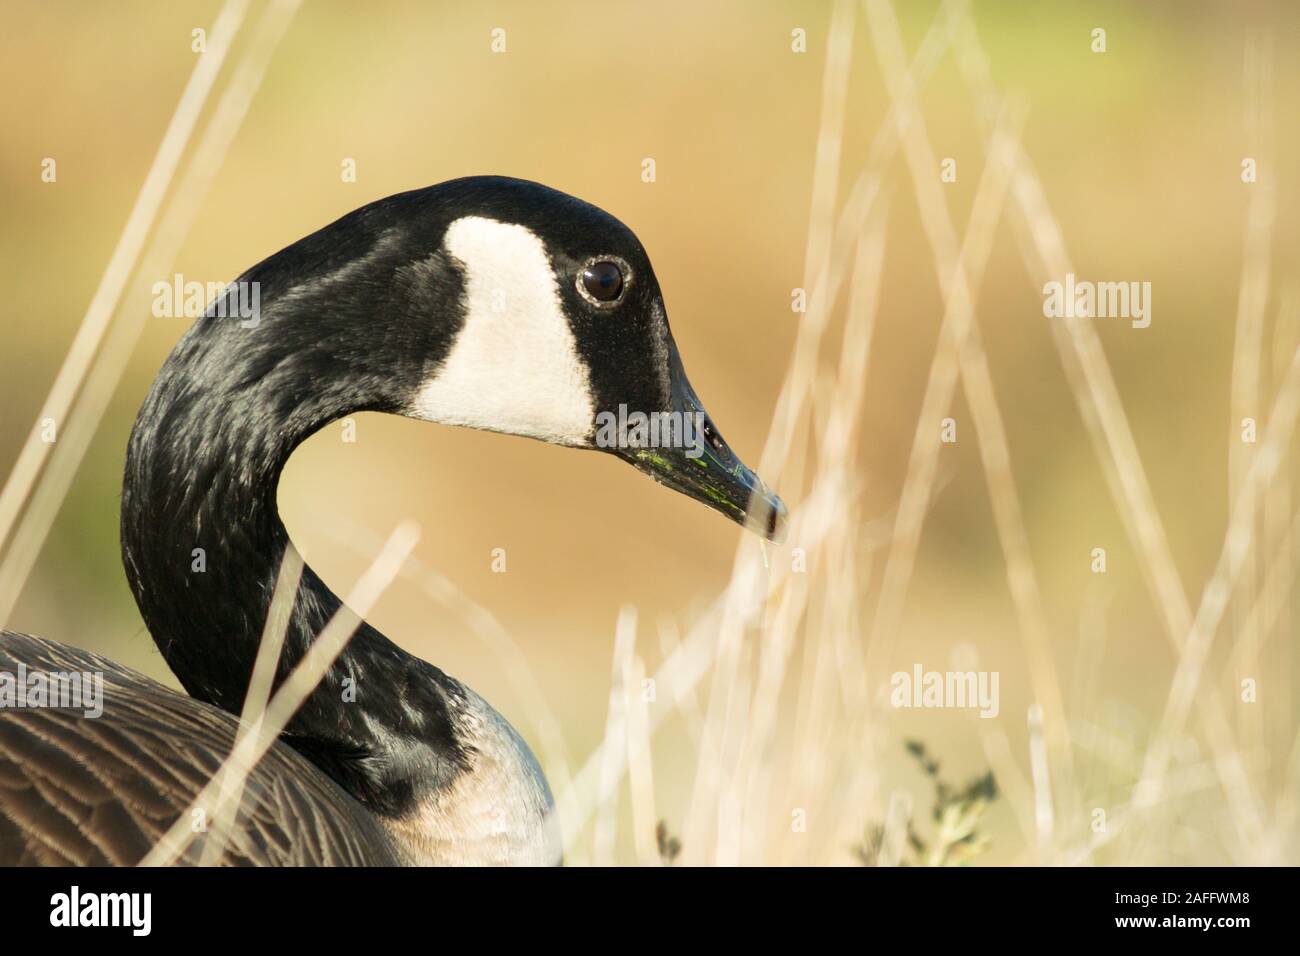 Canada Goose (Branta canadensis) della testa e del collo di profilo sulla giornata autunnale. Mostra distintivo faccia nera con il bianco dal sottogola. Foto Stock